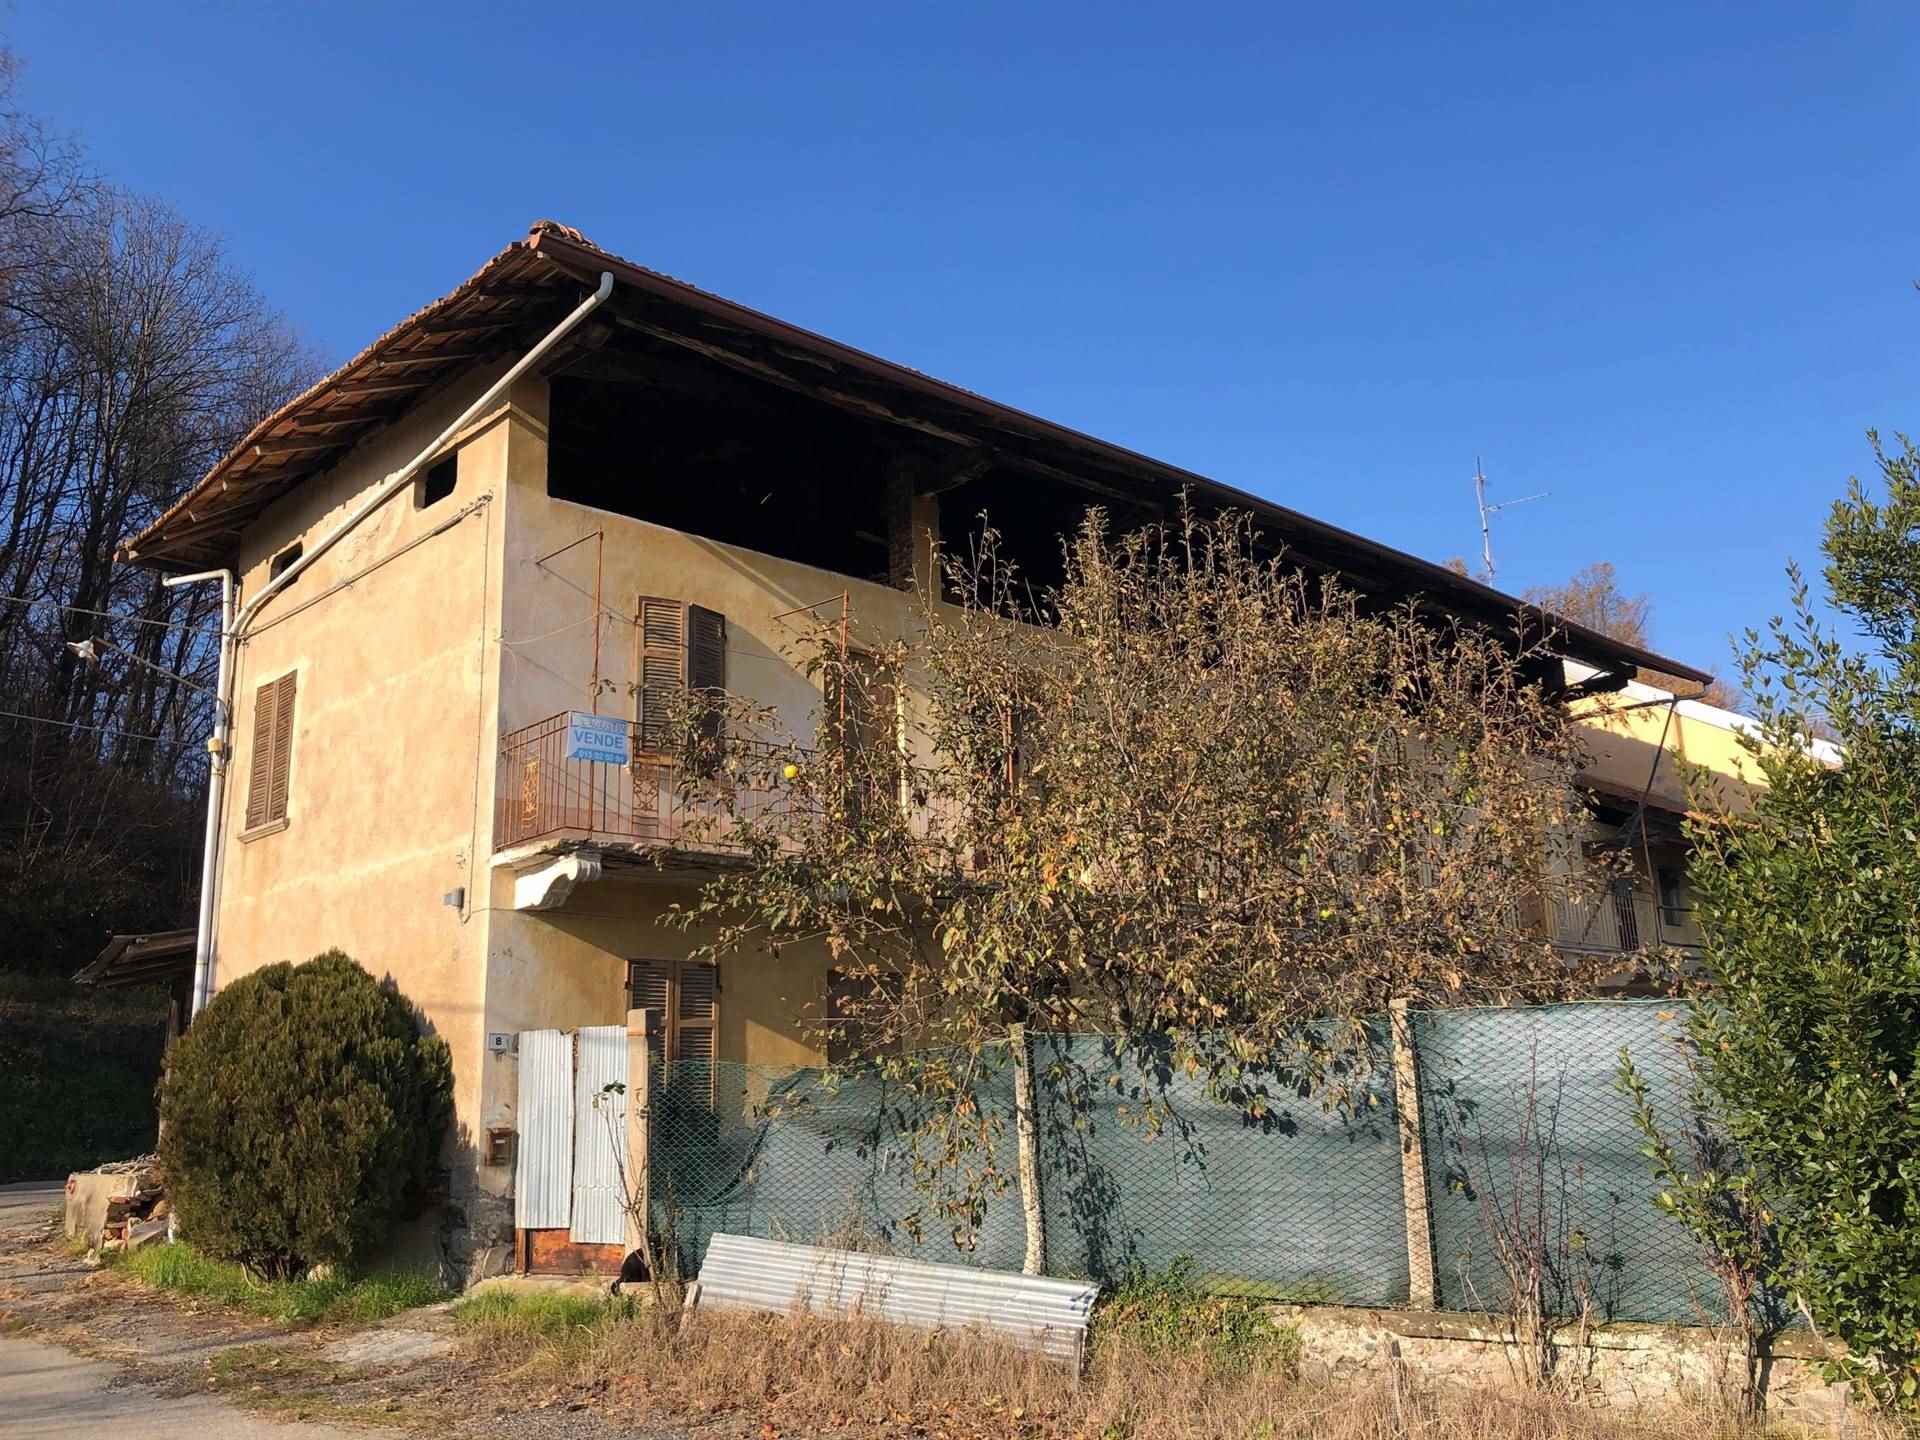 Rustico / Casale in vendita a Fontaneto d'Agogna, 10 locali, prezzo € 100.000 | PortaleAgenzieImmobiliari.it